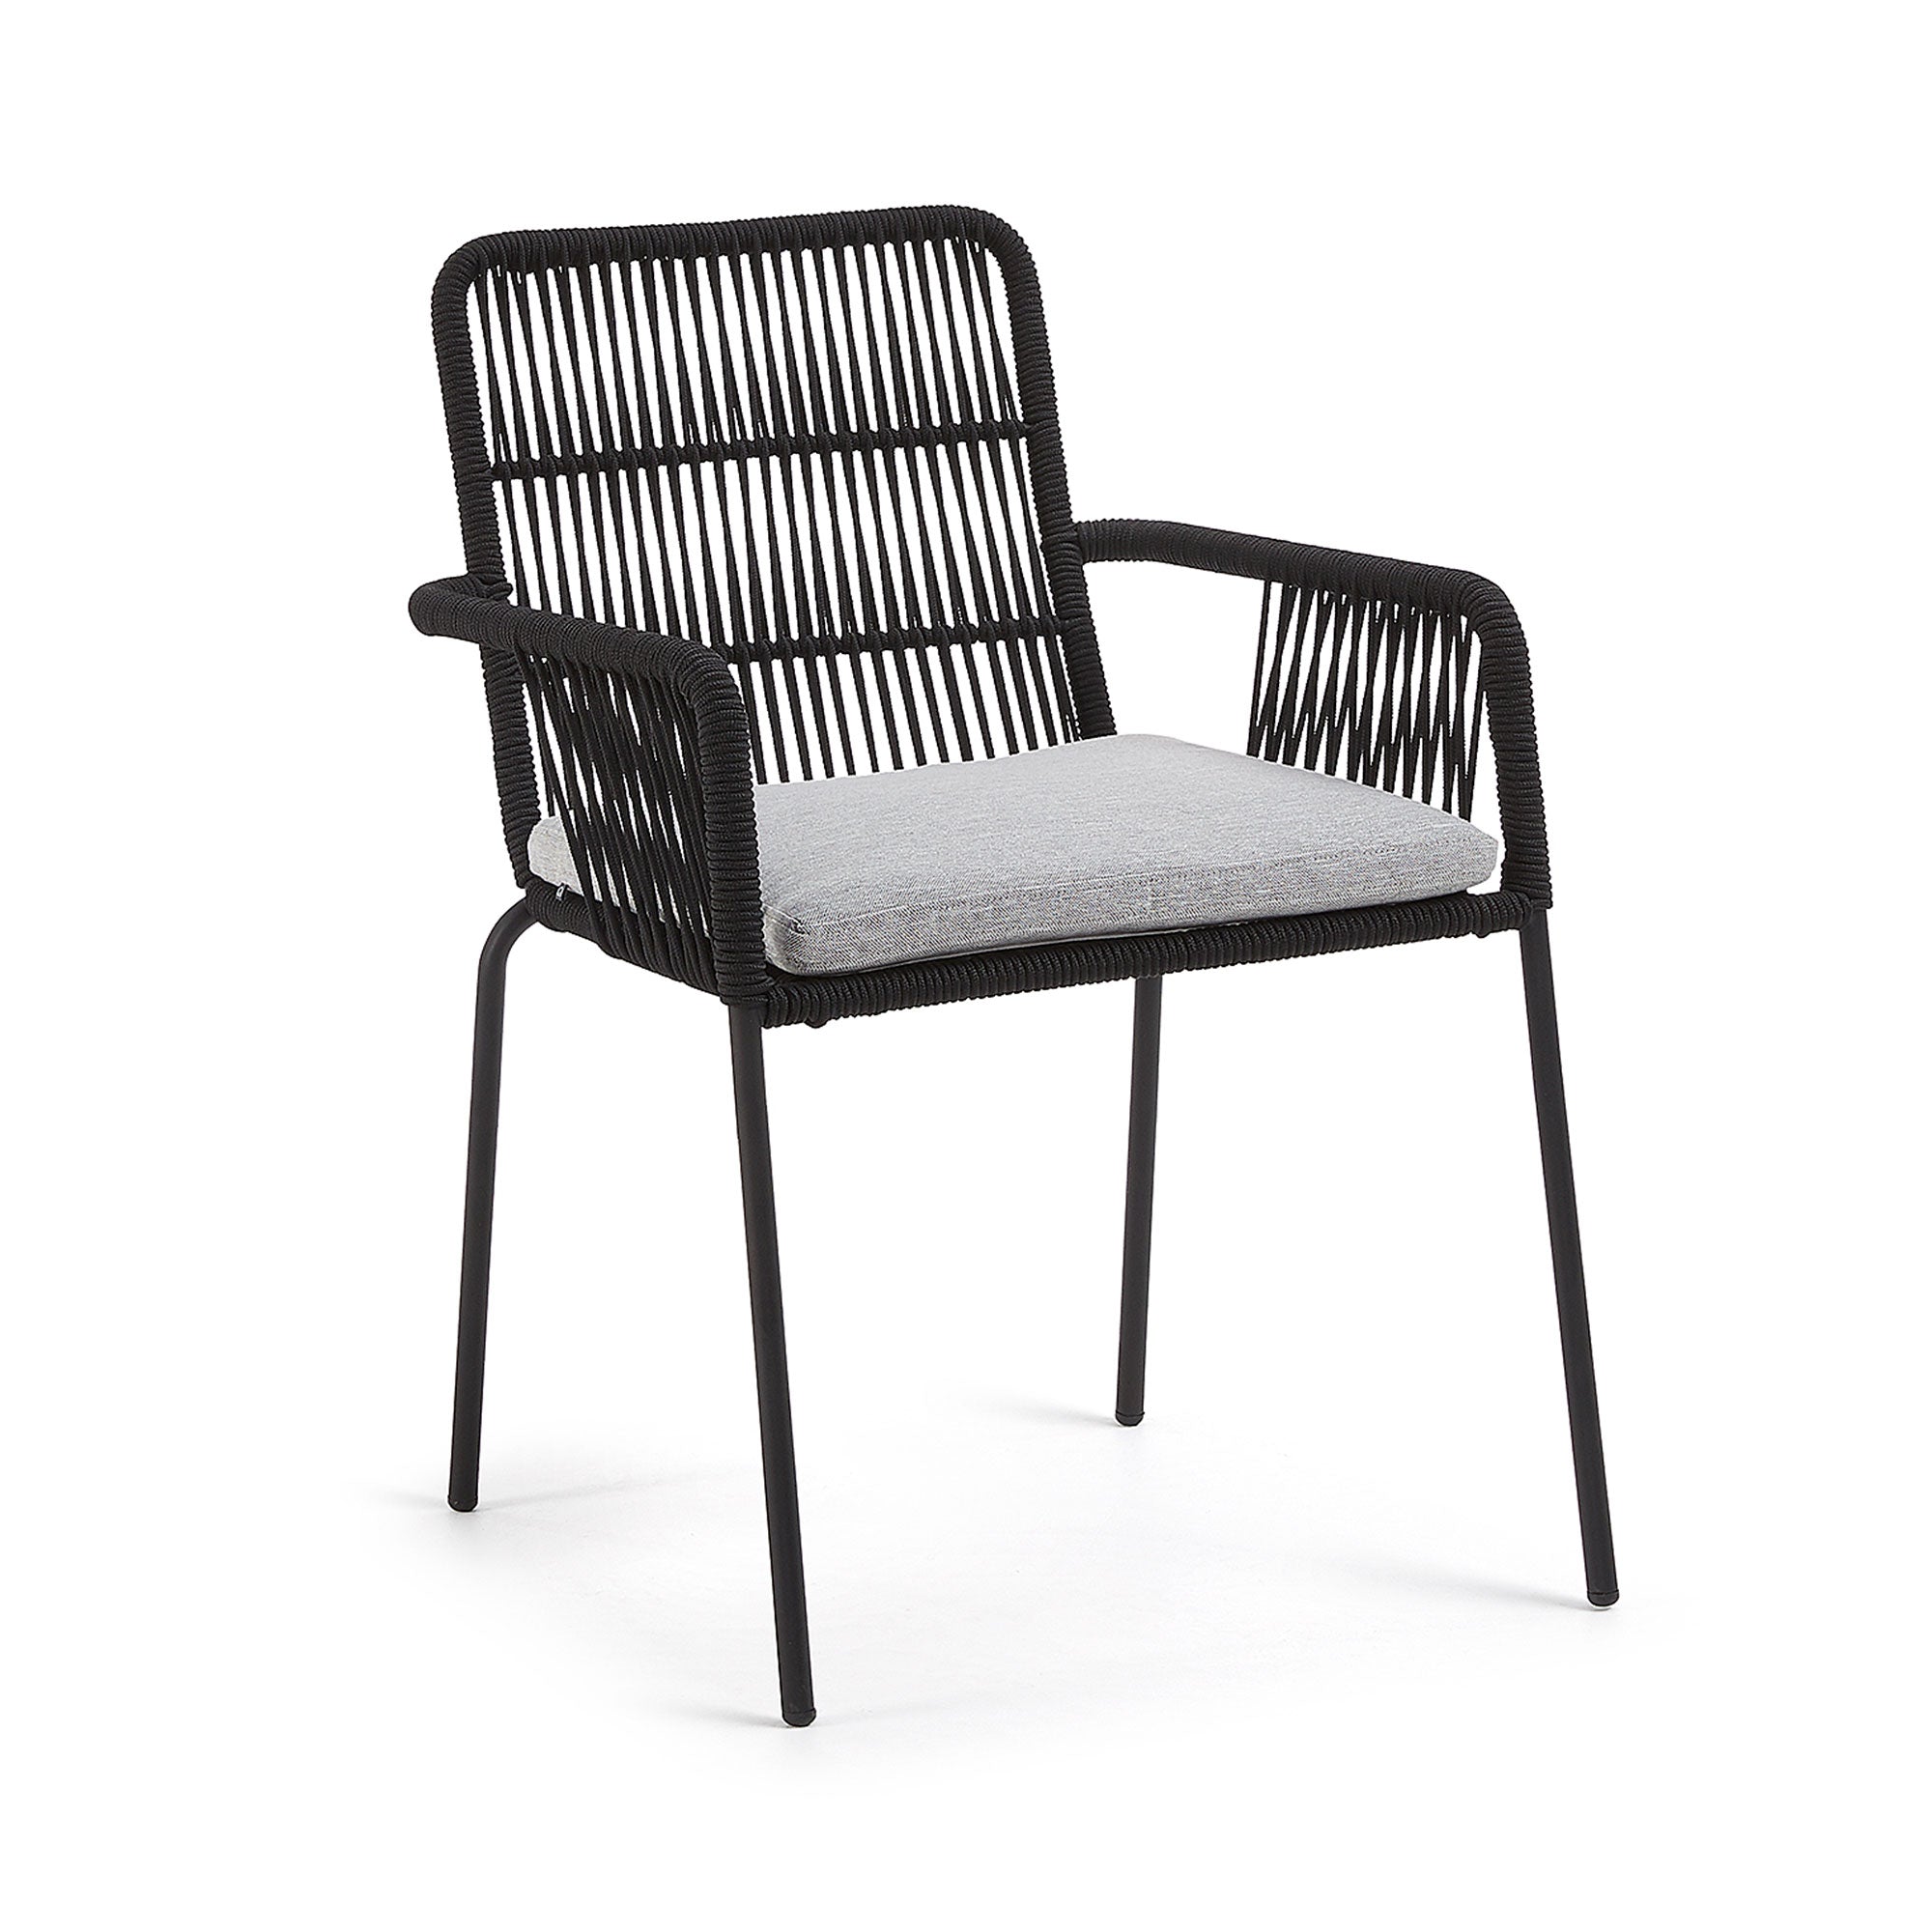 Samanta egymásba rakható szék fekete zsinórból és horganyzott acéllábakból